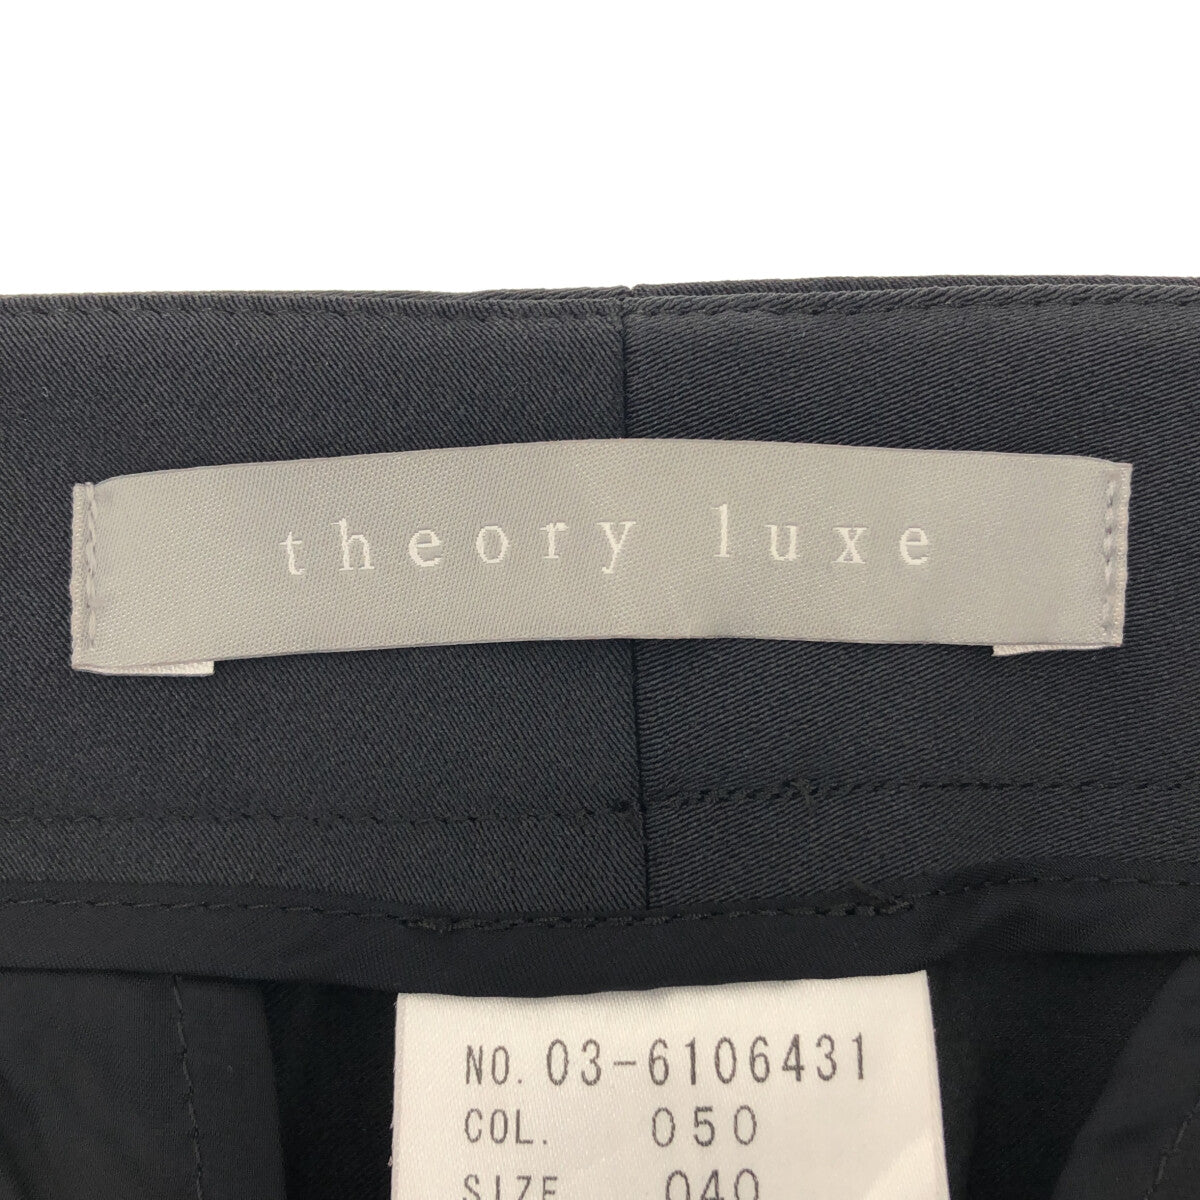 日本からも購入 theory luxe ガウチョパンツ サイズ０４０ - パンツ